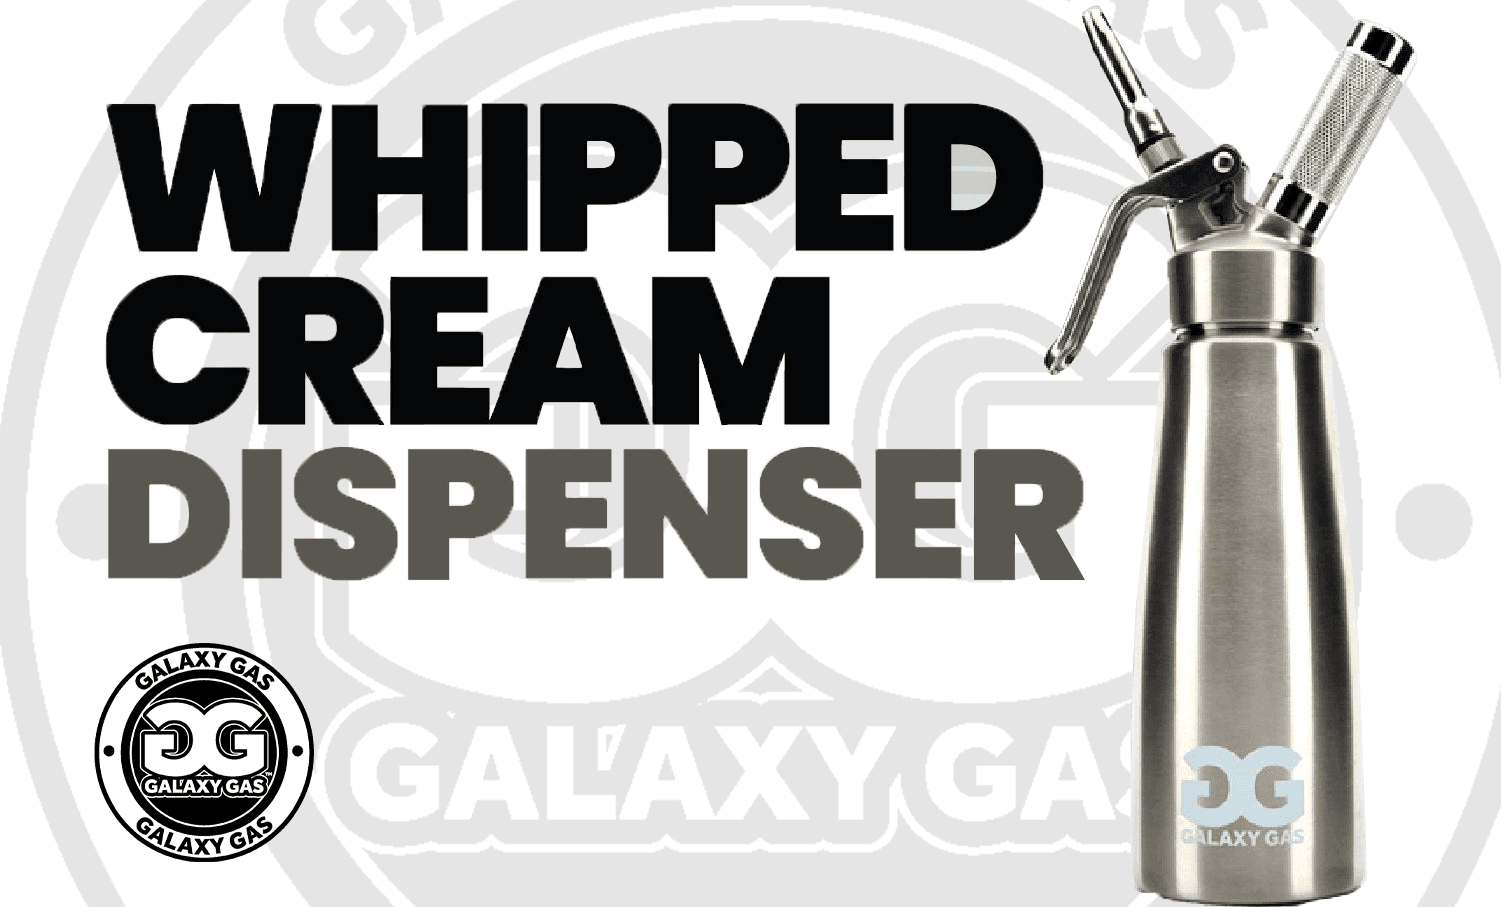 Whipped Cream Dispenser